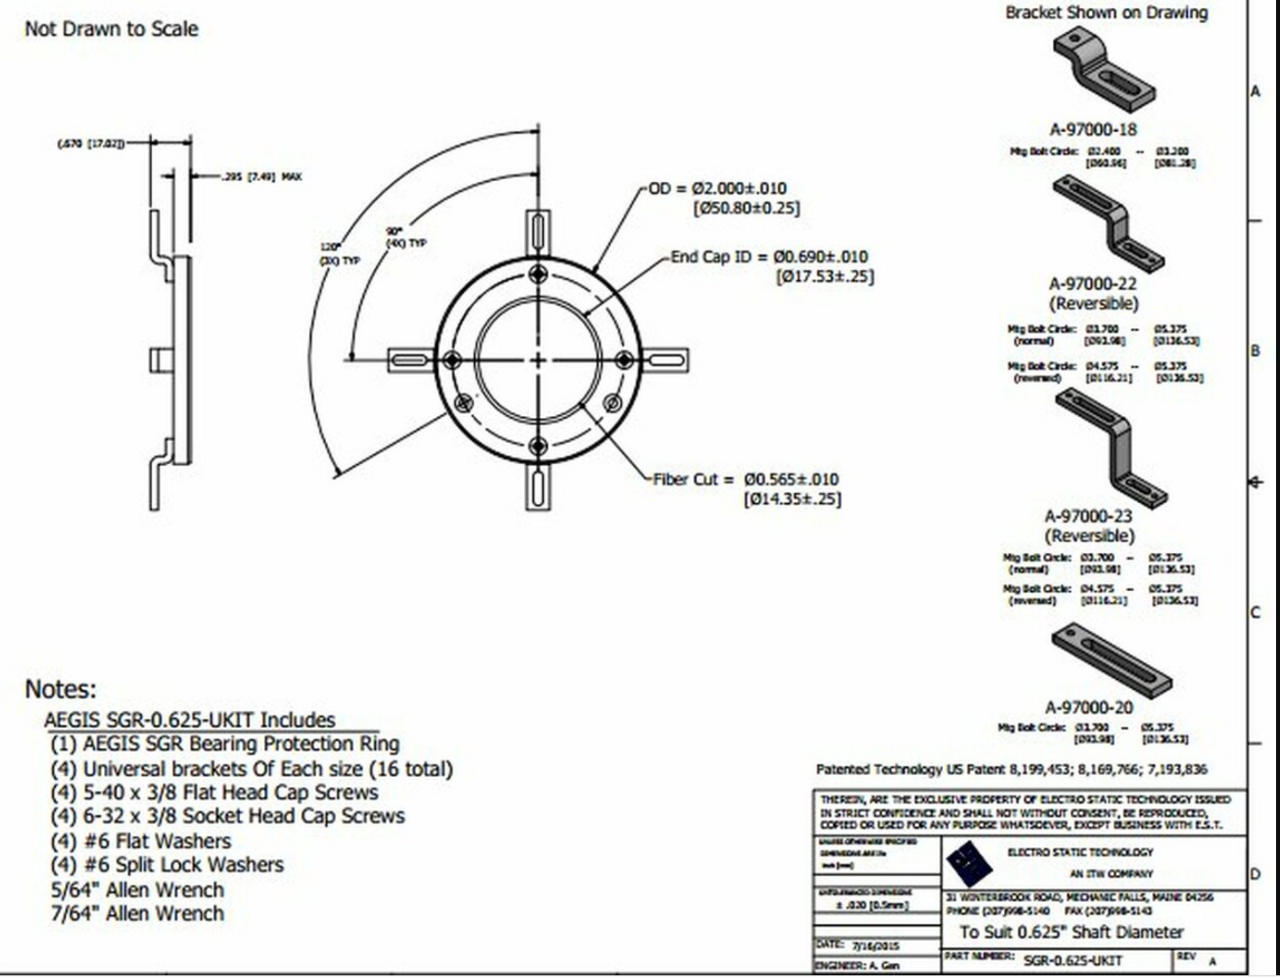 SGR-0.625-UKIT-1A4,  AEGIS Bearing Protection Split Ring 5/8" (56 Frame) Shaft Diameter  